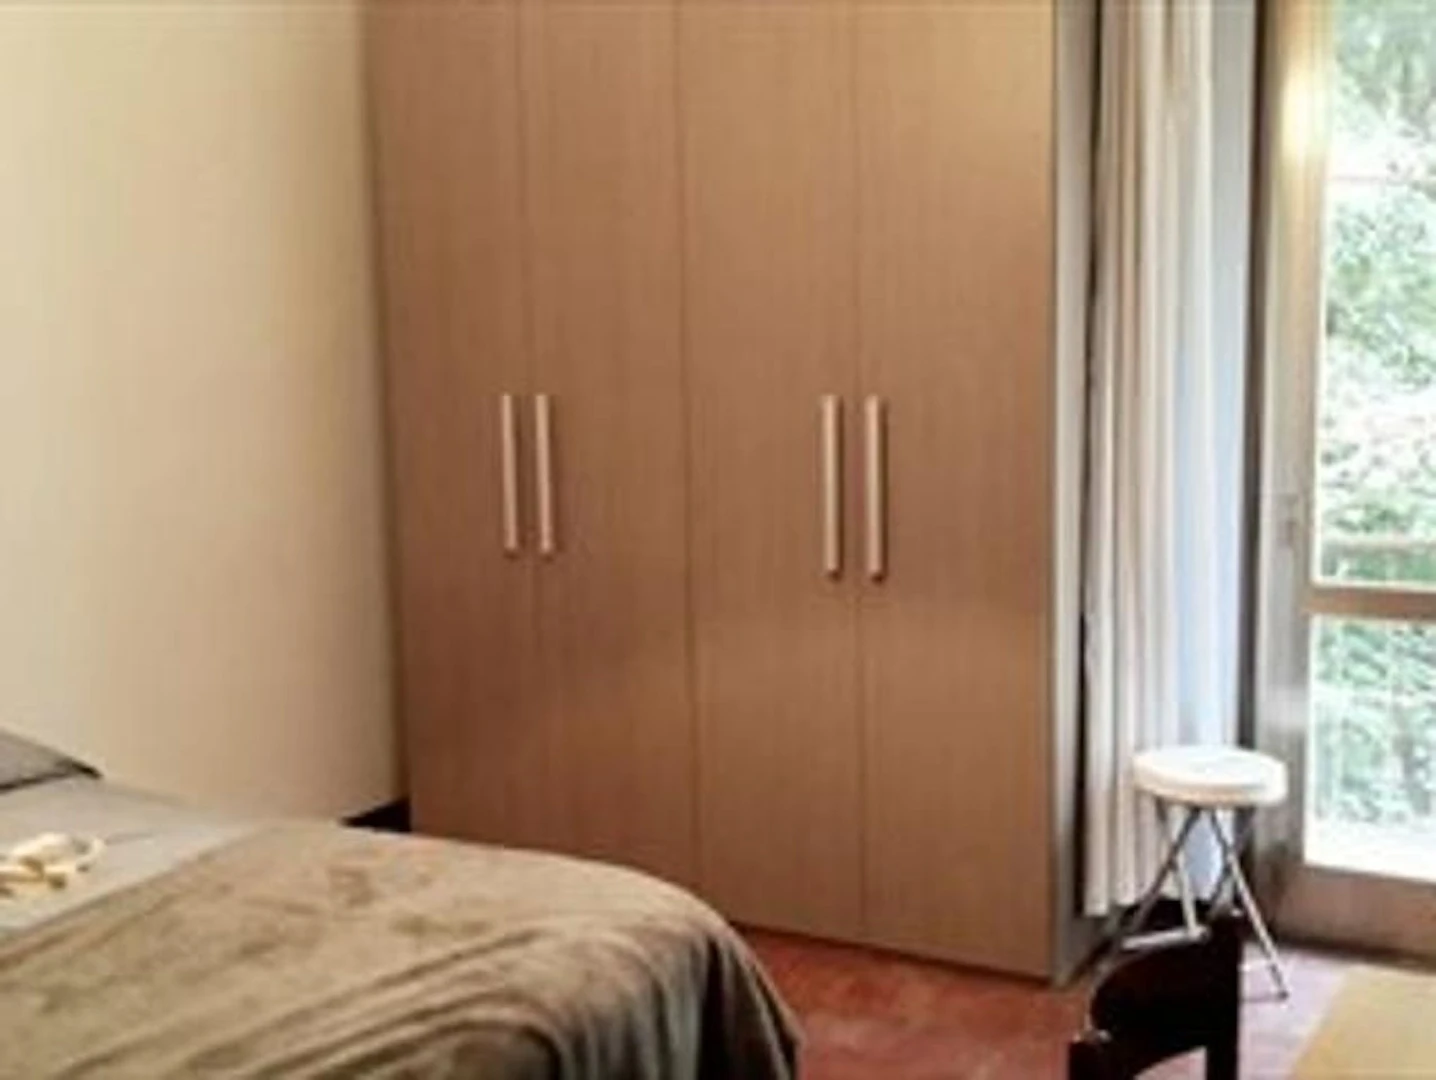 Quarto para alugar num apartamento partilhado em Piacenza